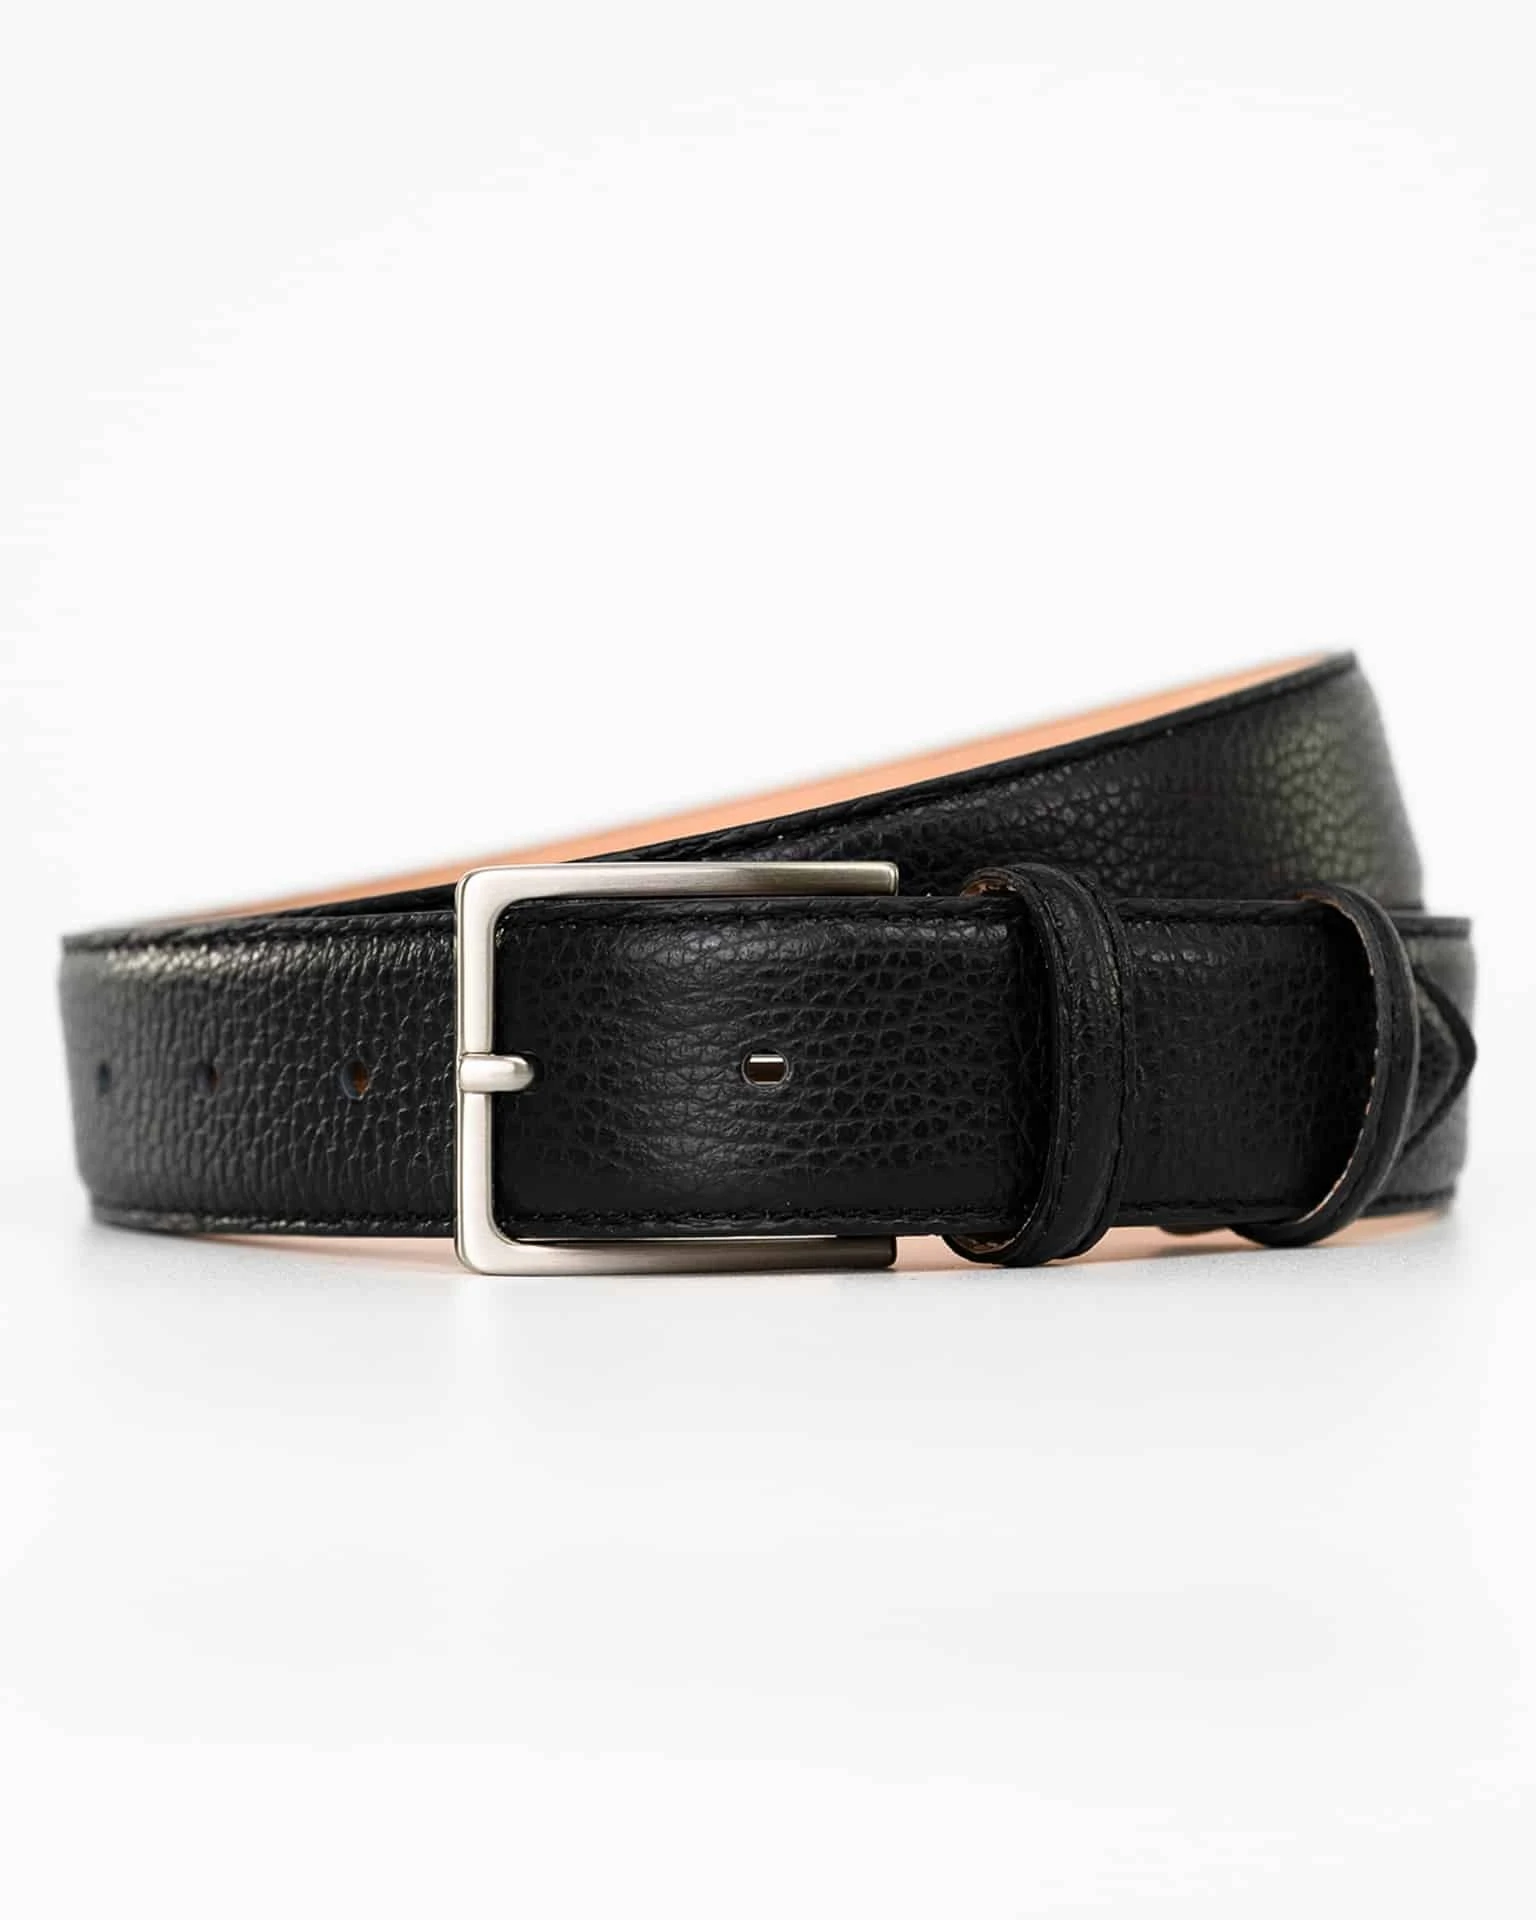 leather belts / Gürtel / belte